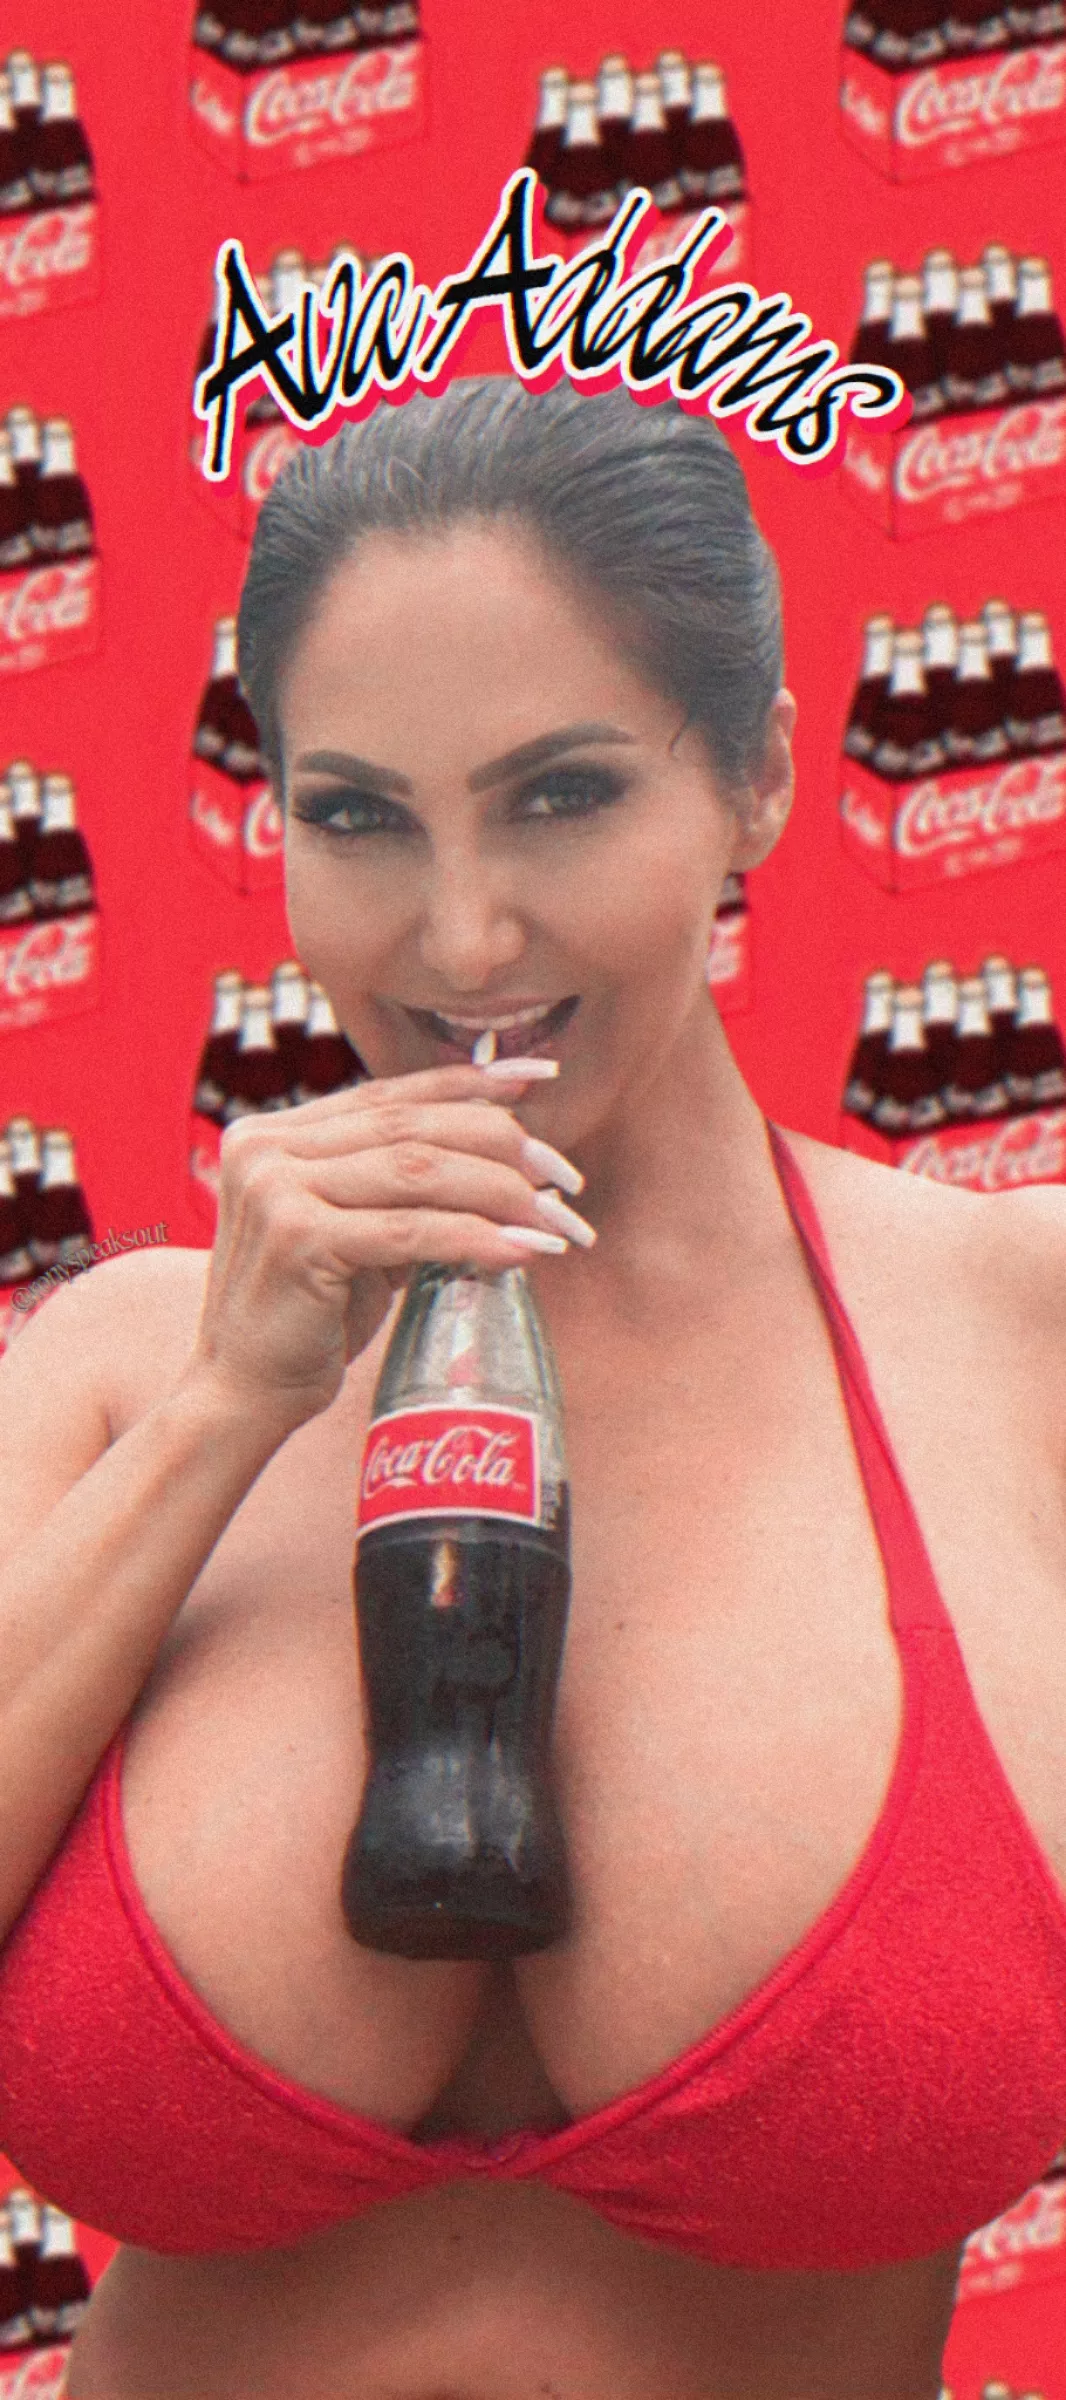 Coca Cola Milf Nudes Avaaddams Nude Pics Org